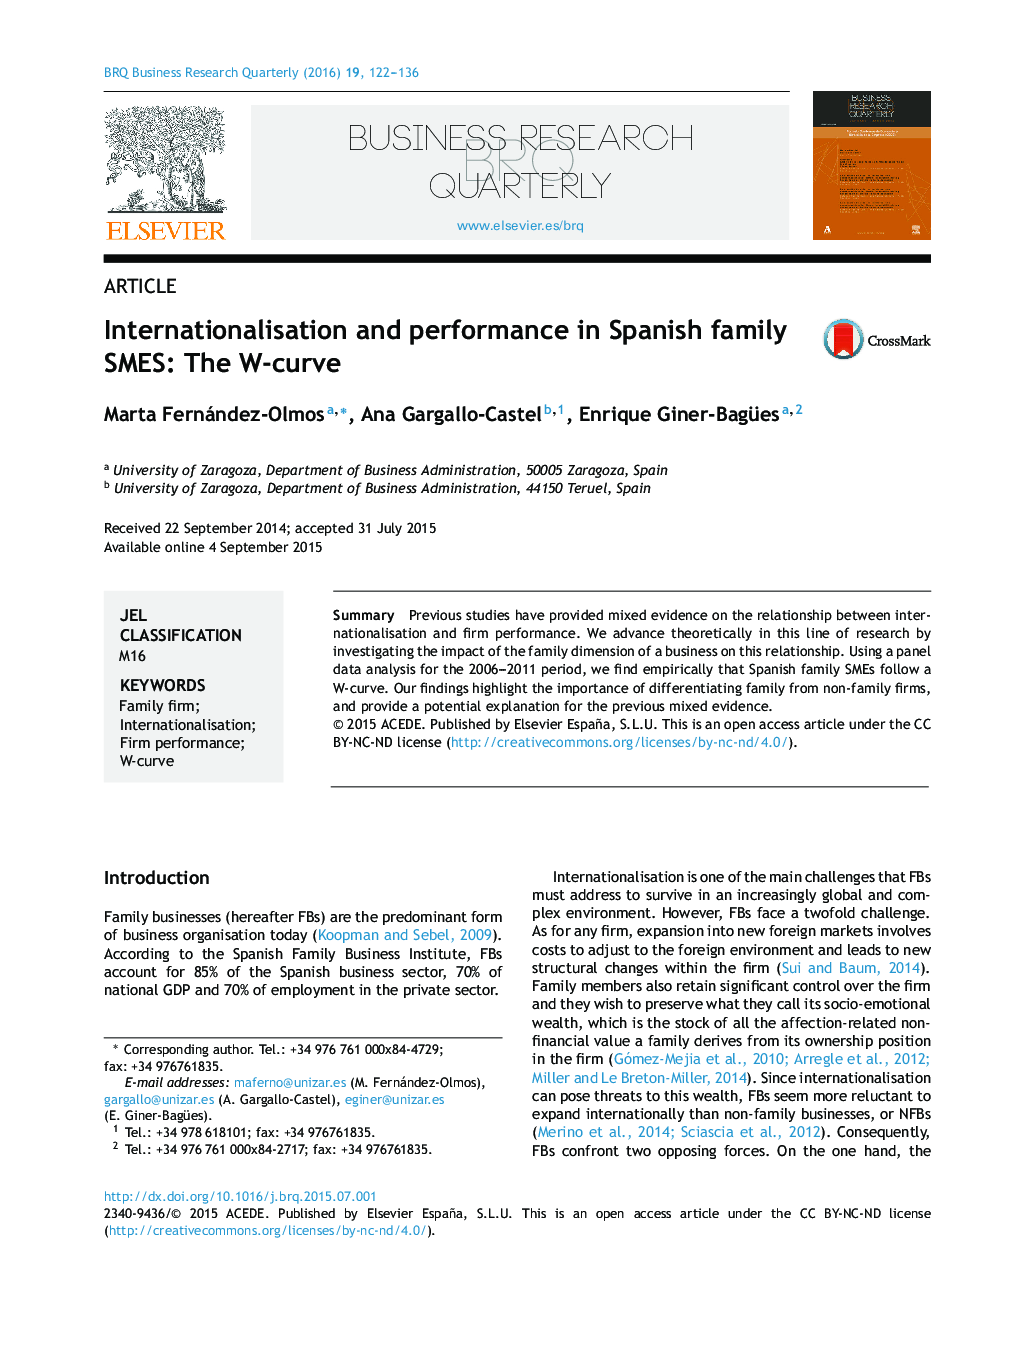 بین المللی کردن و عملکرد در SMES های خانوادگی اسپانیایی : منحنی W 